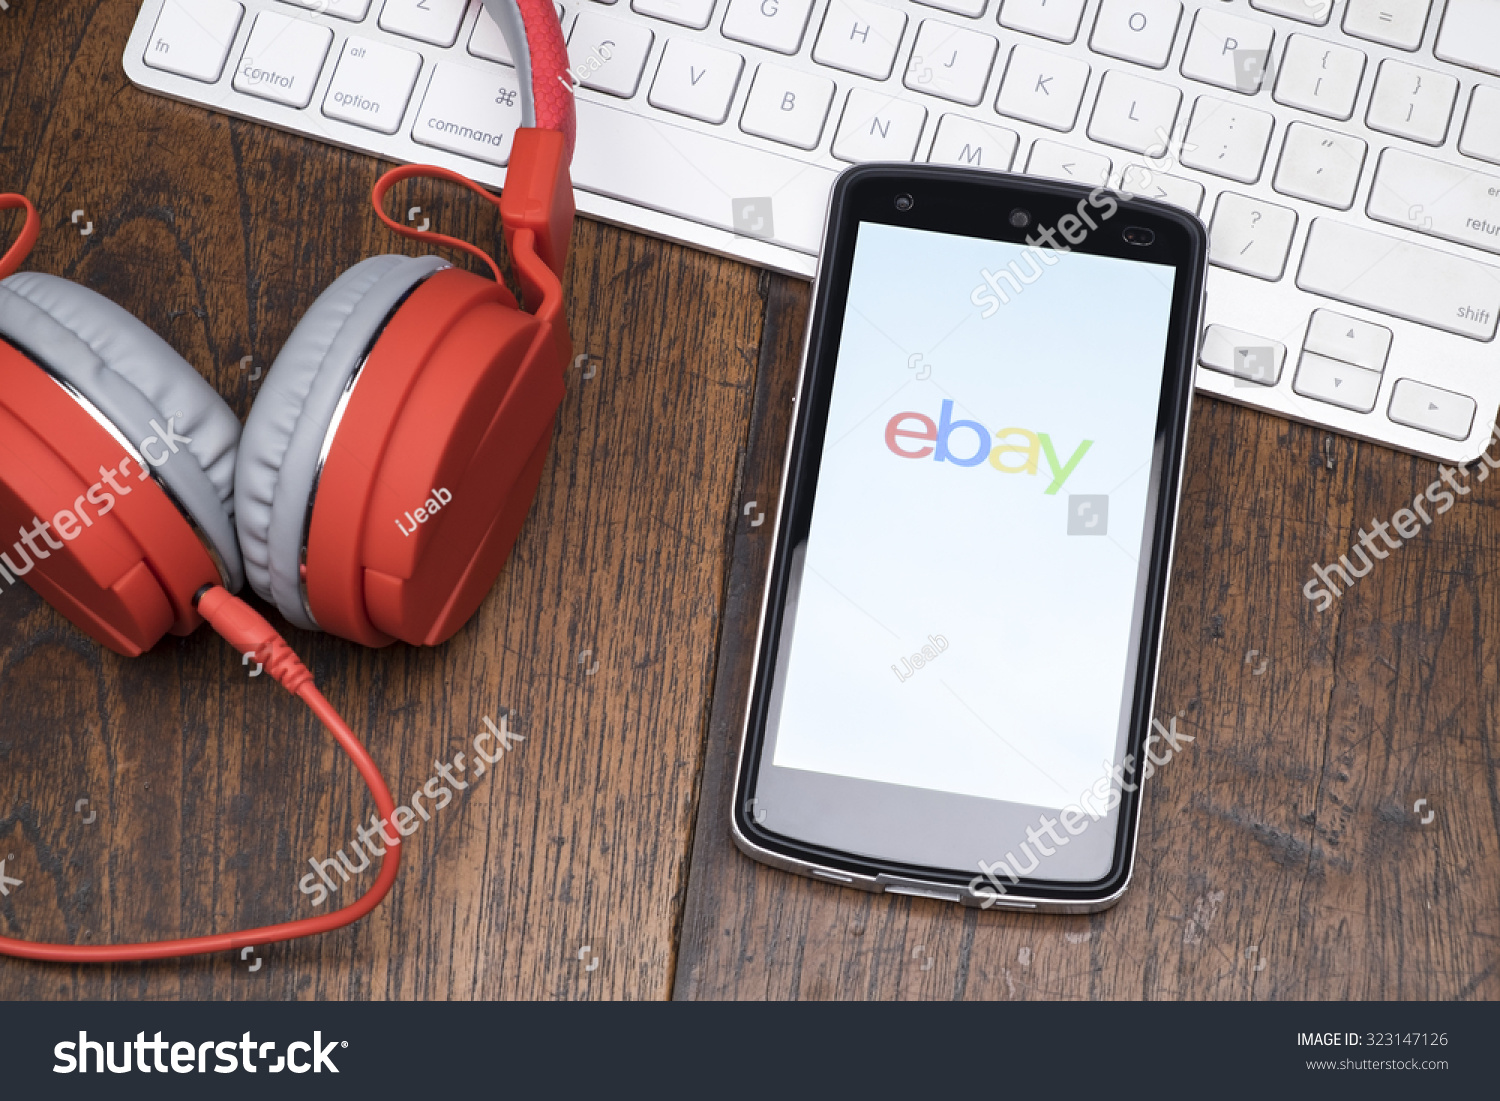 0月2日:Ebay应用是美国跨国公司和电子商务公